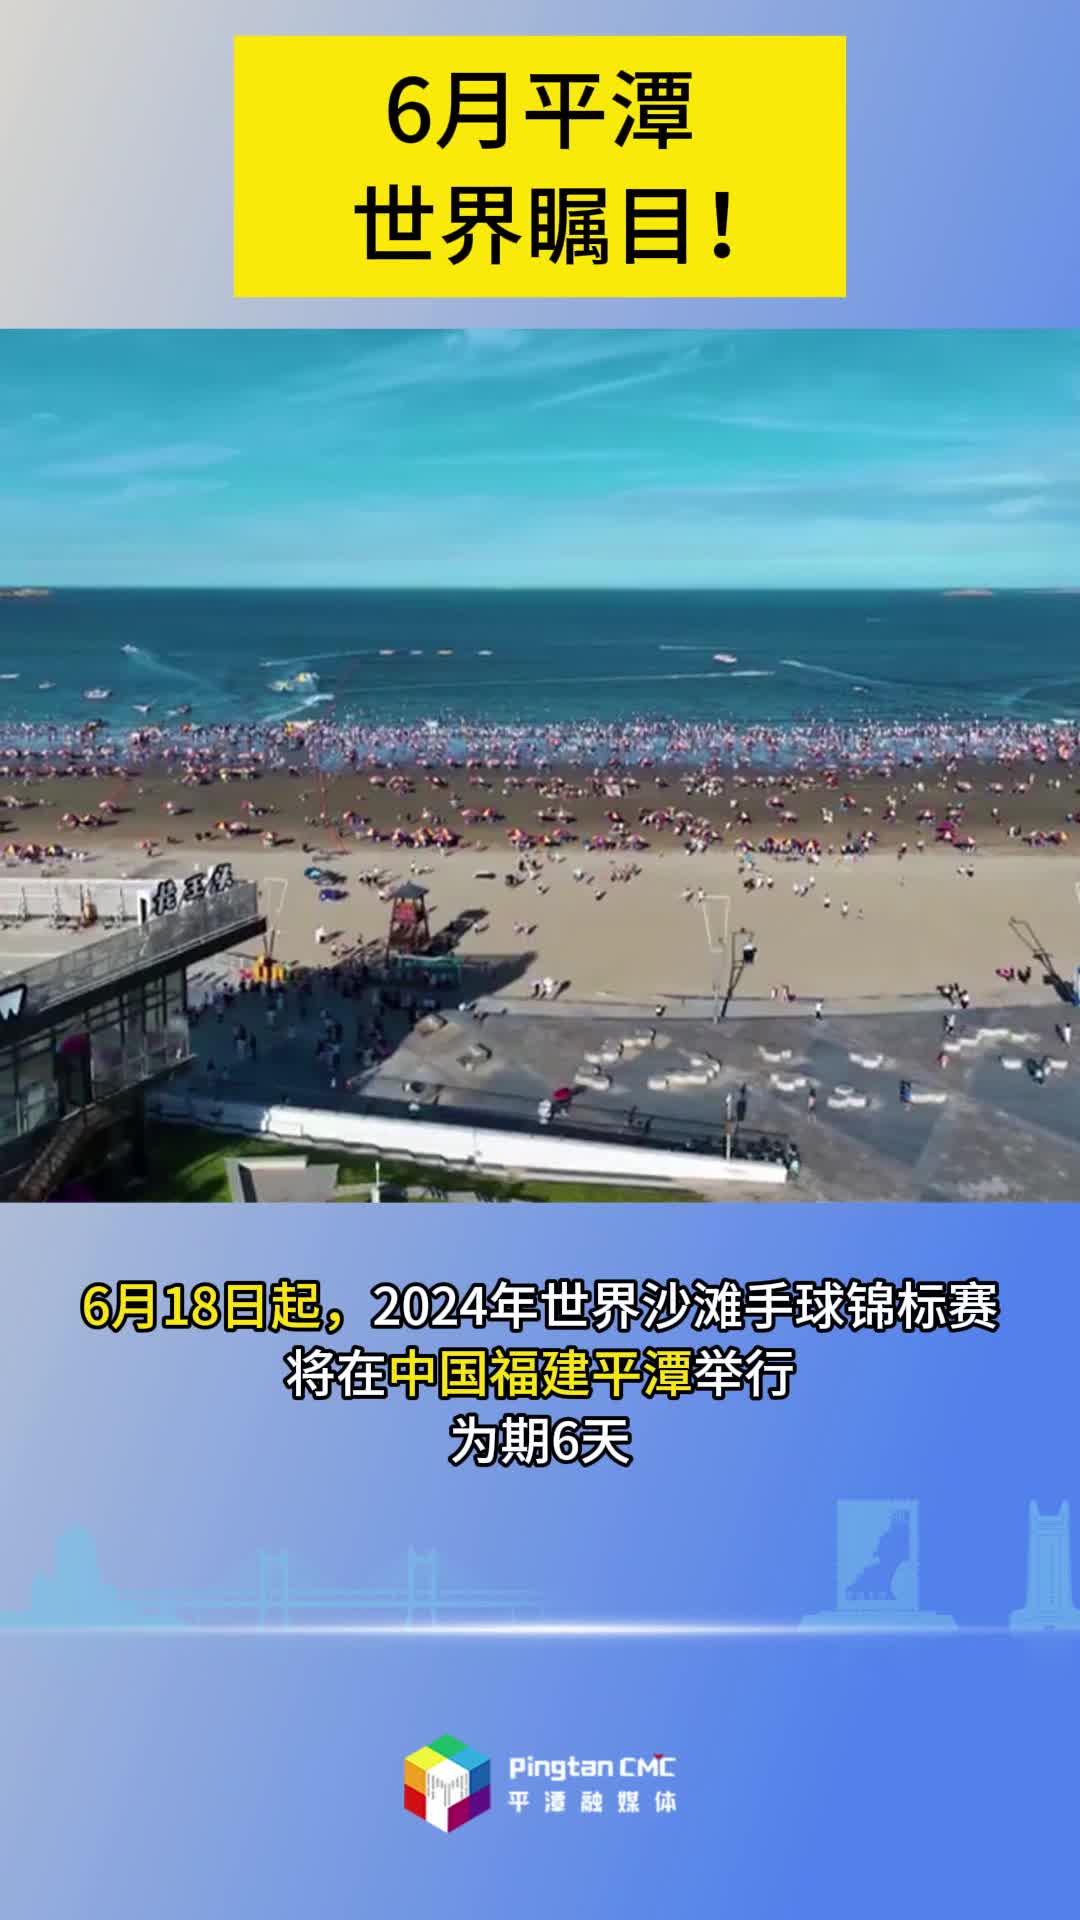 2024年世界沙滩手球锦标赛，6月18日将在福建平潭激情开赛